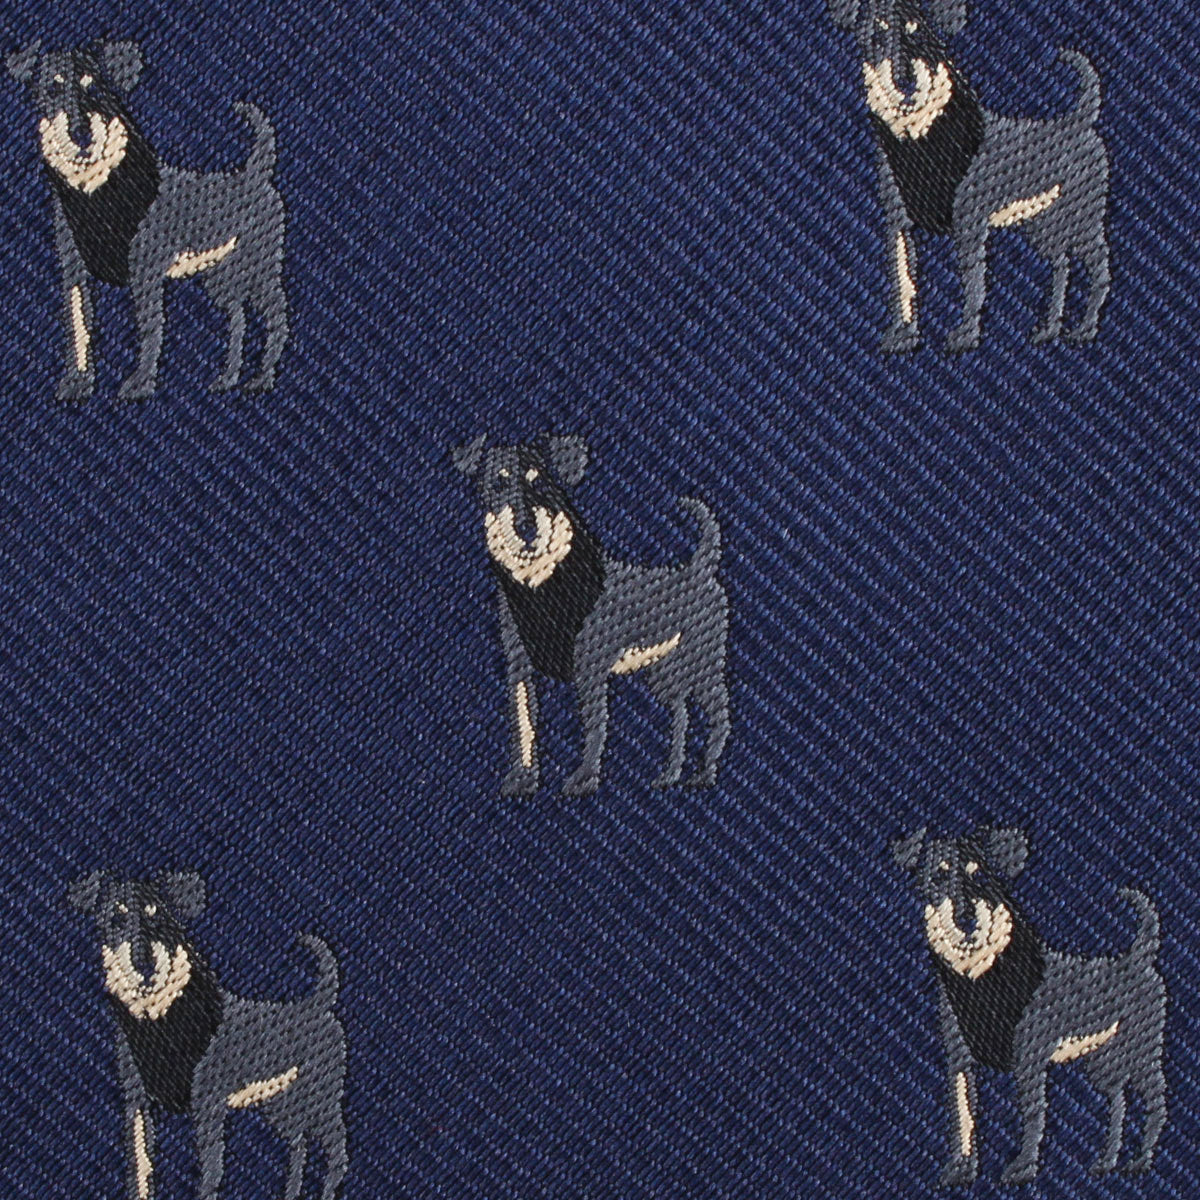 Rottweiler Dog Fabric Necktie